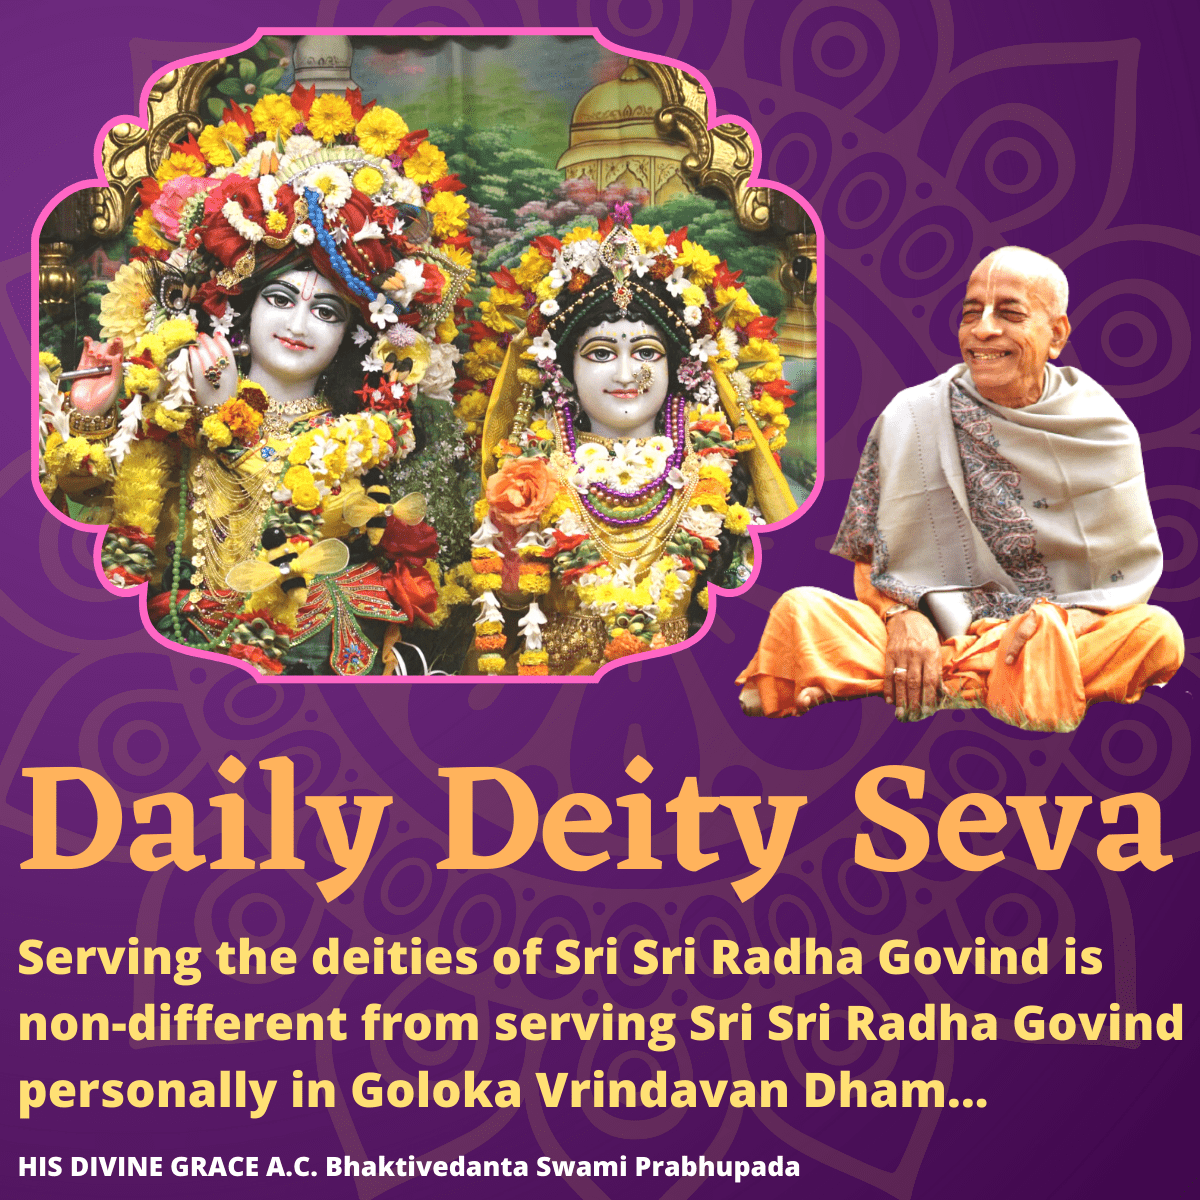 Daily Deity Seva